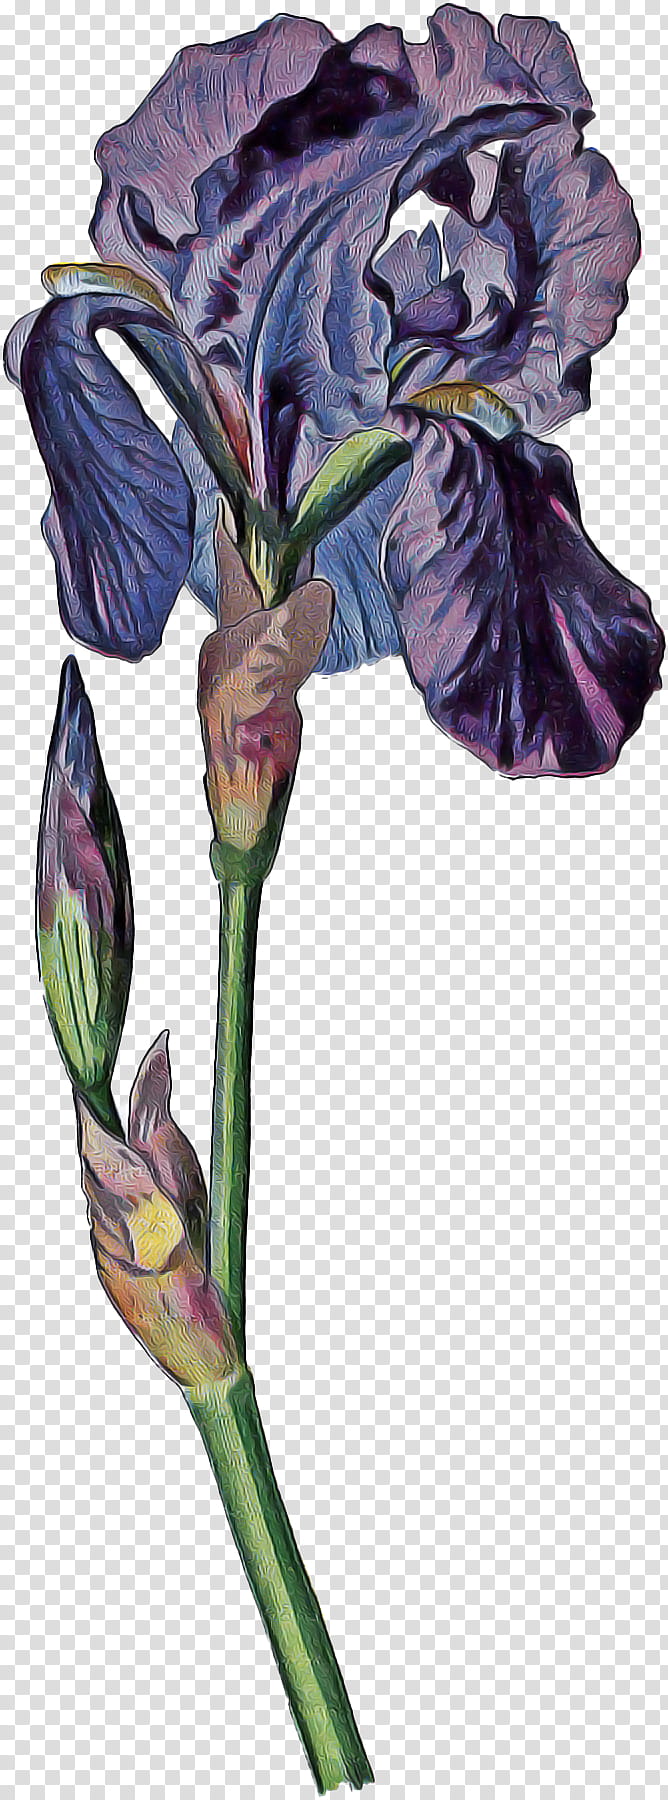 Flowers, Irises, Plants, Blume, Painting, Plant Stem, Cut Flowers, Ebay transparent background PNG clipart